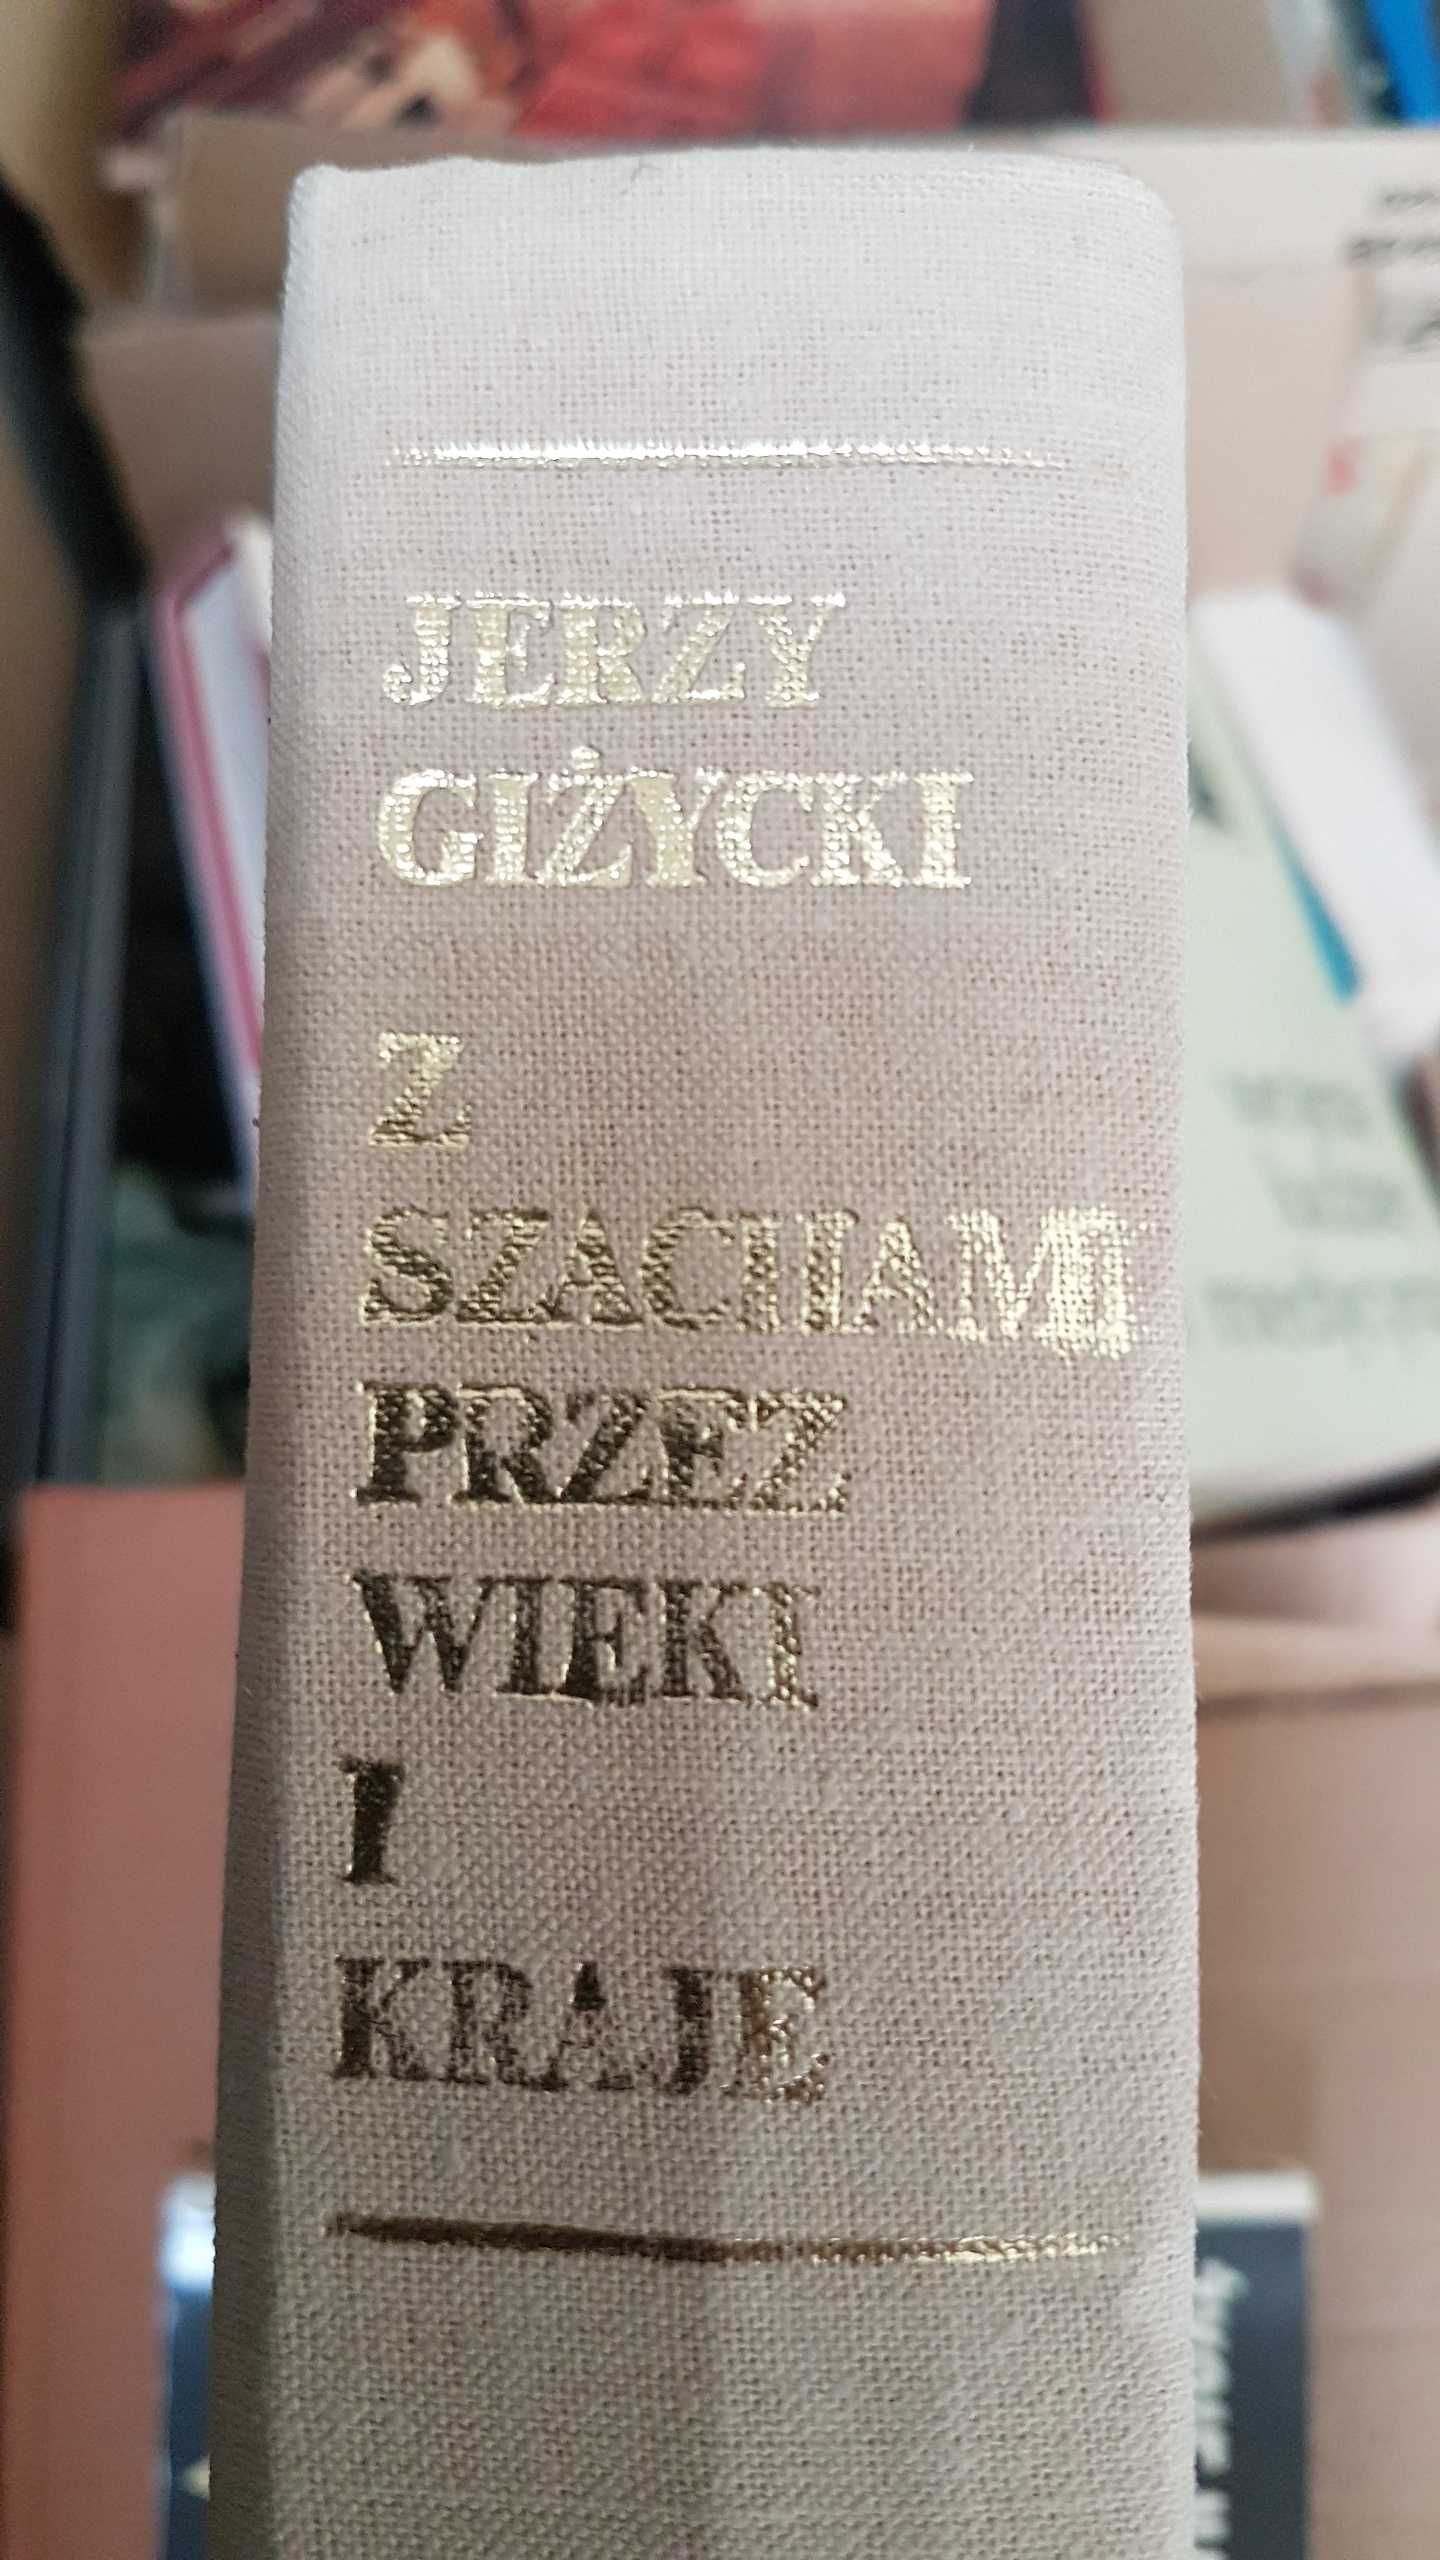 Z szachami przez wieki i kraje Jerzy Giżycki